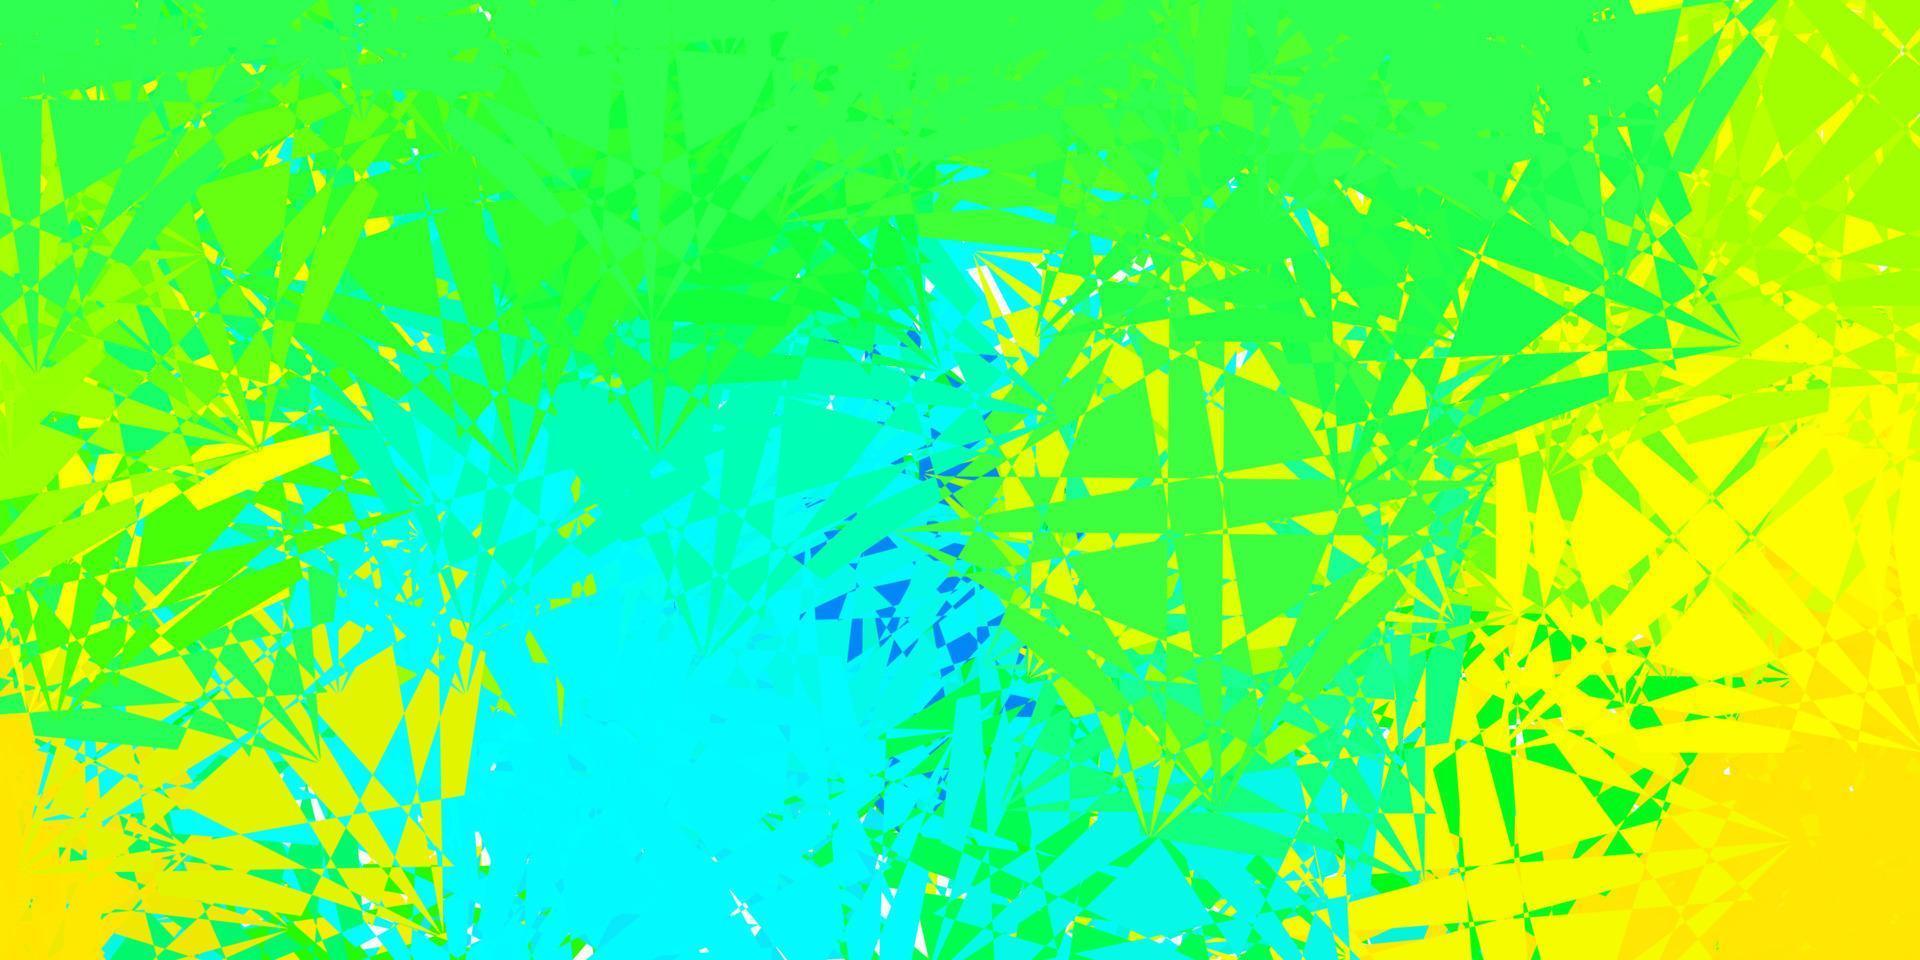 ljusblå, gul vektorbakgrund med polygonala former. vektor